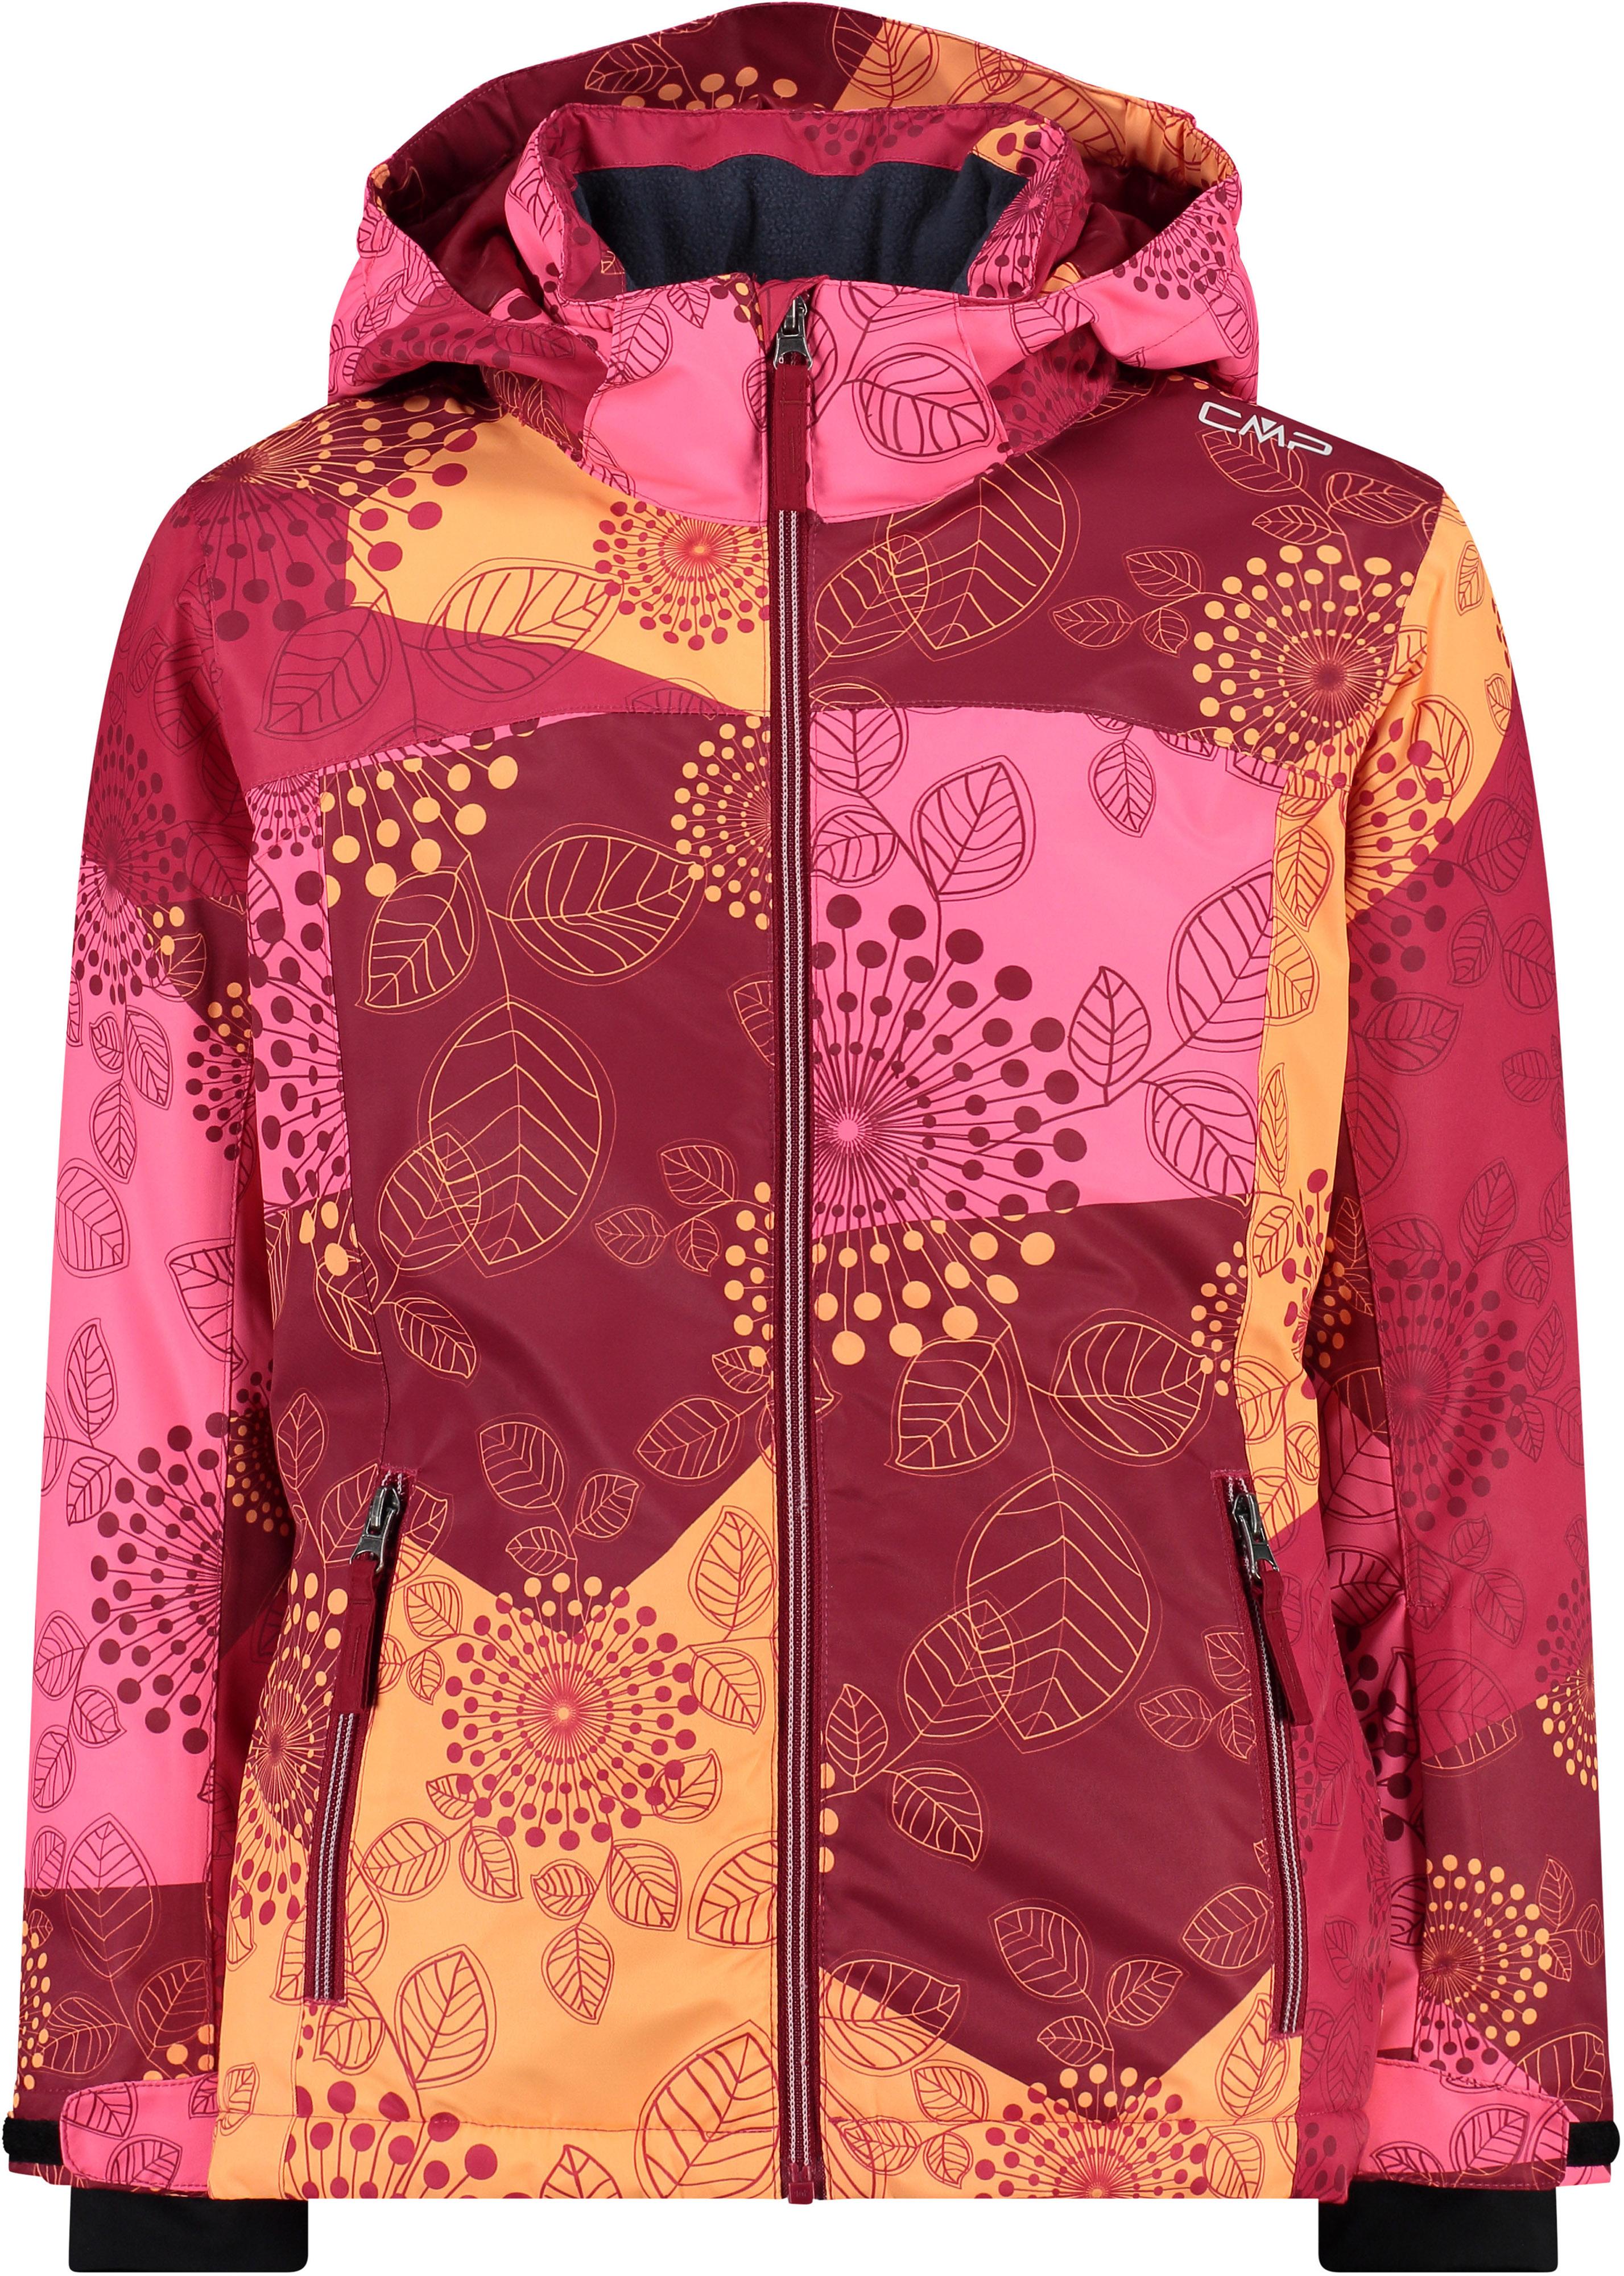 CMP Skijacke anemone-fuxia-gloss Shop kaufen im SportScheck Online von Mädchen